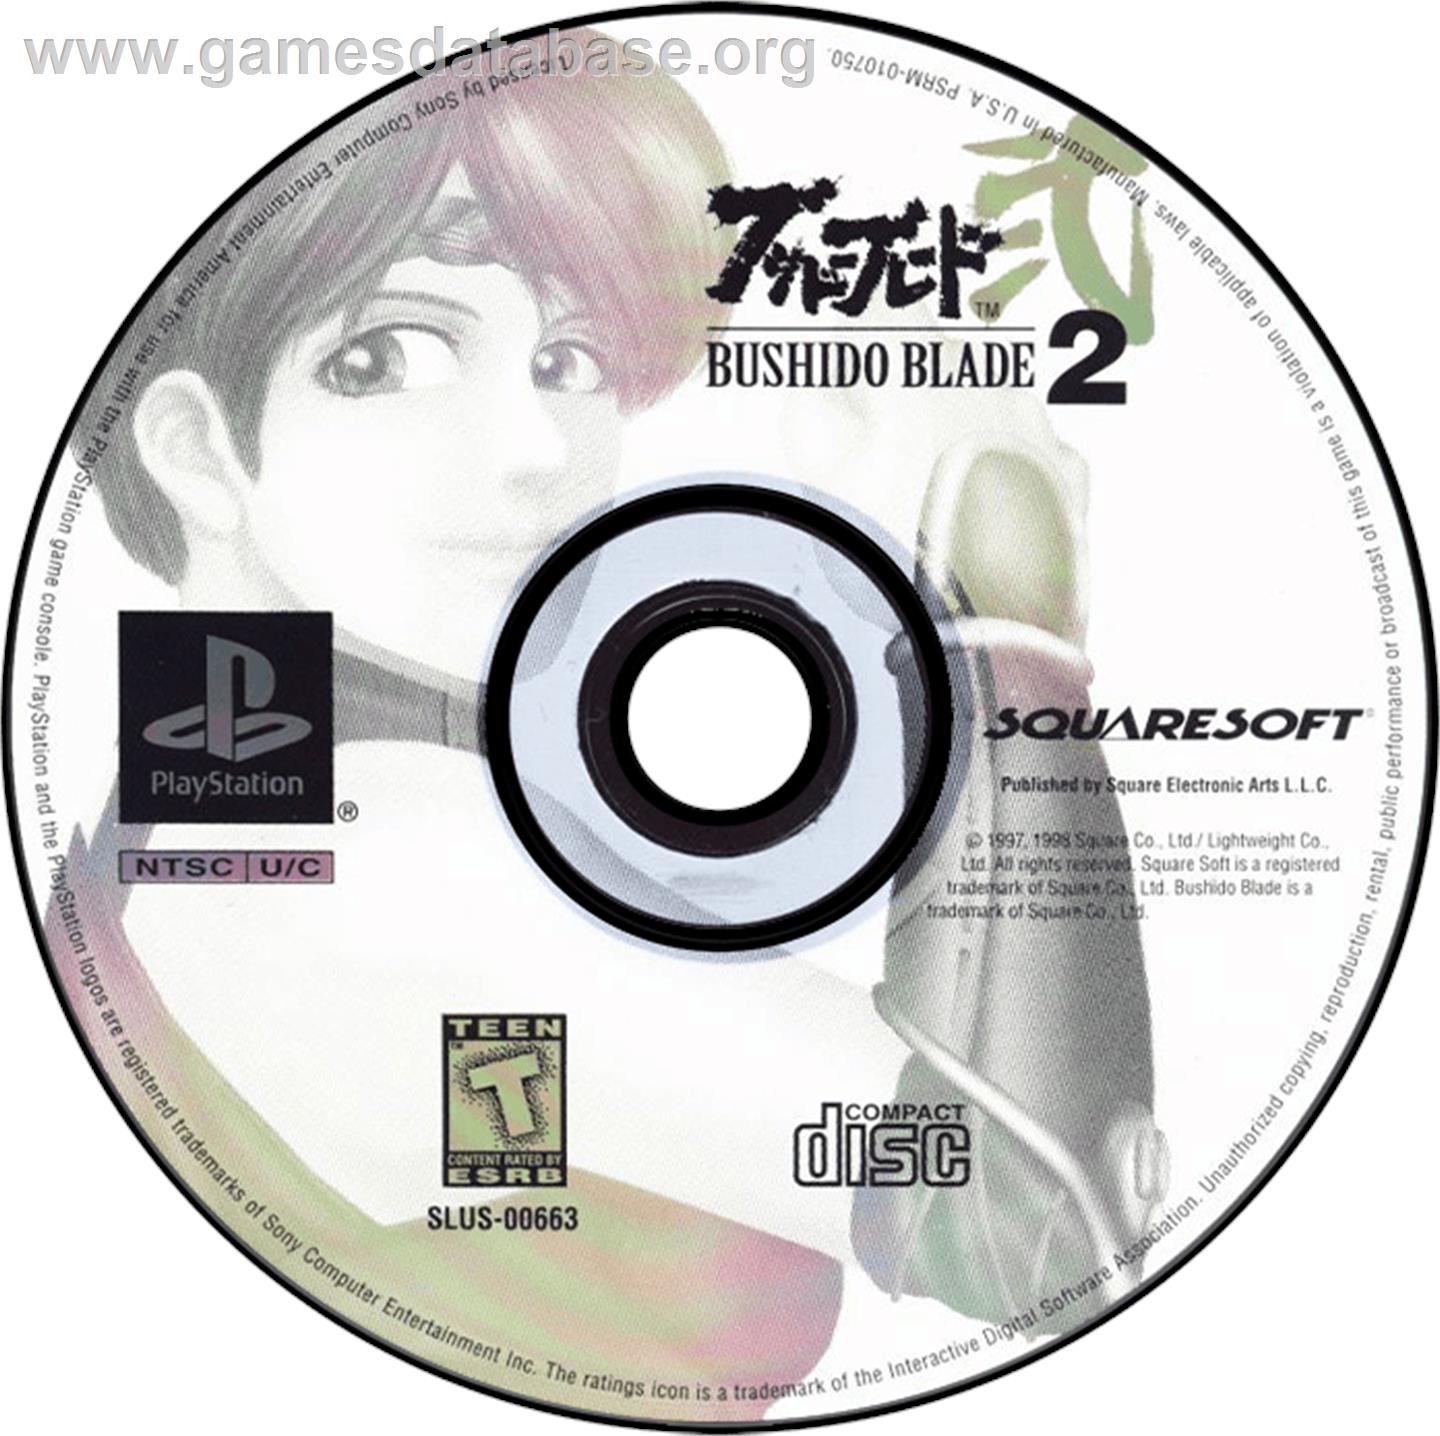 Bushido Blade 2 - Sony Playstation - Artwork - Disc